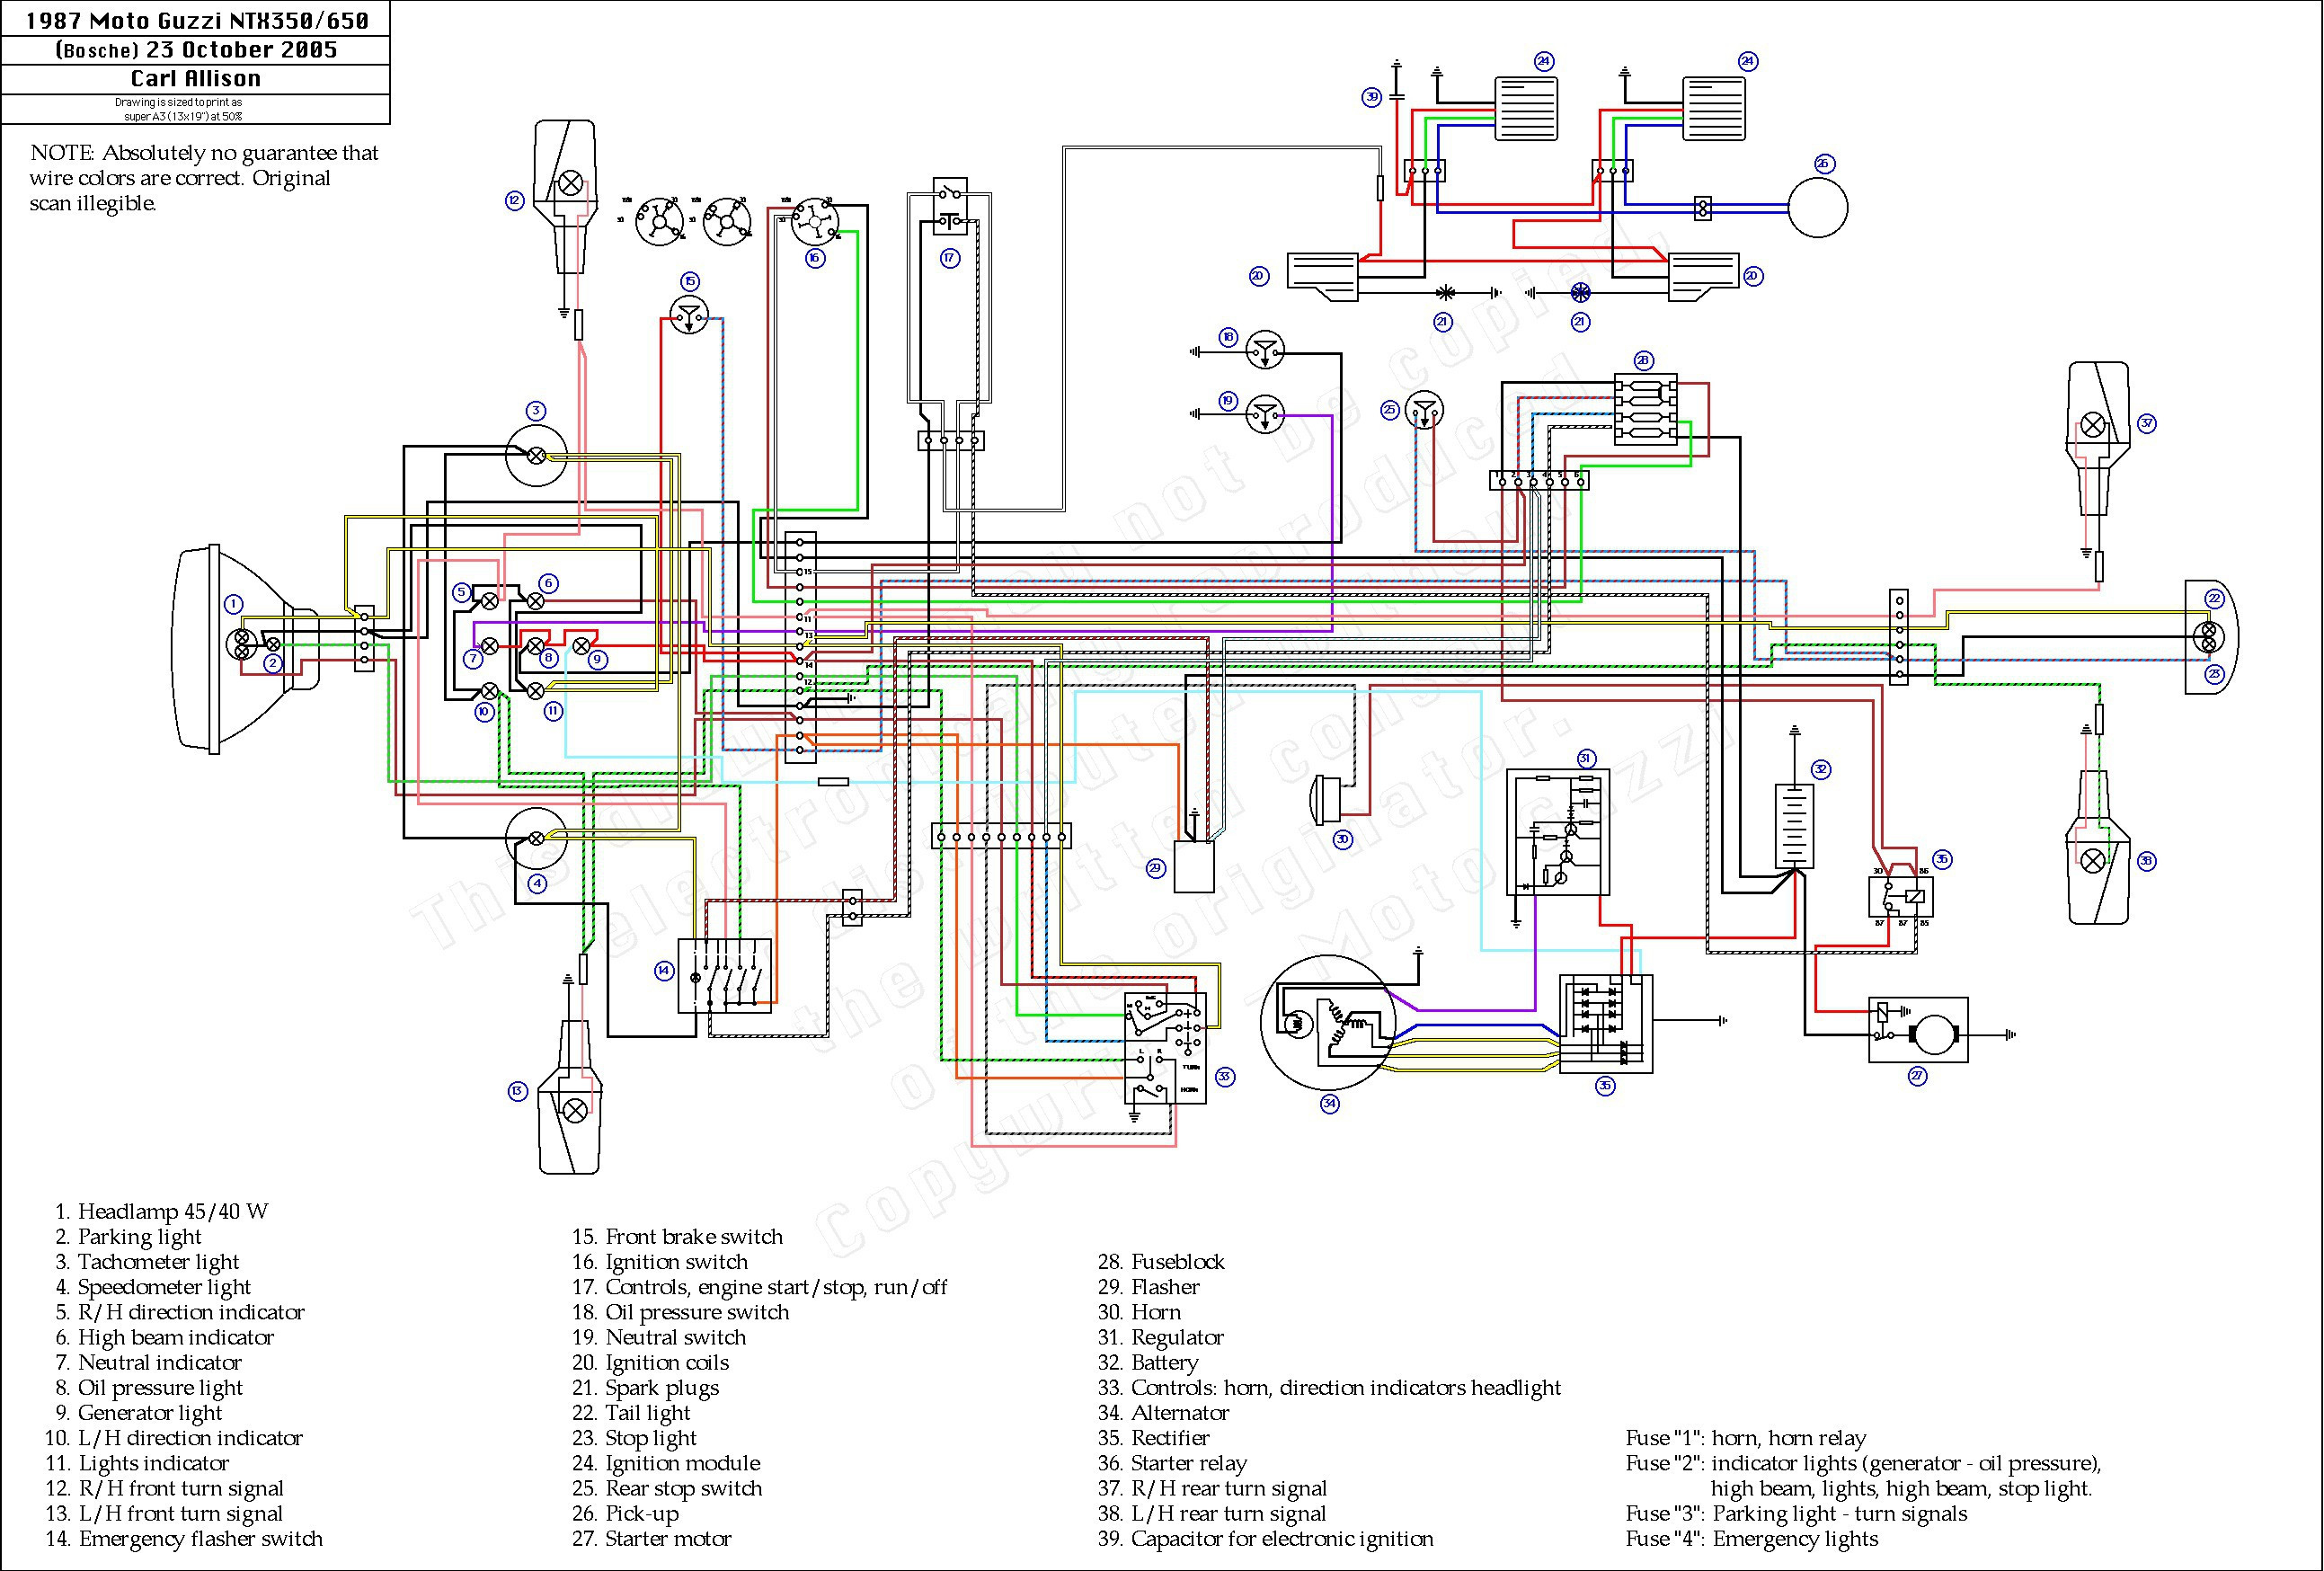 125Cc Taotao Atv Wiring Diagram | Schematic Diagram - Chinese Atv Wiring Diagram 50Cc